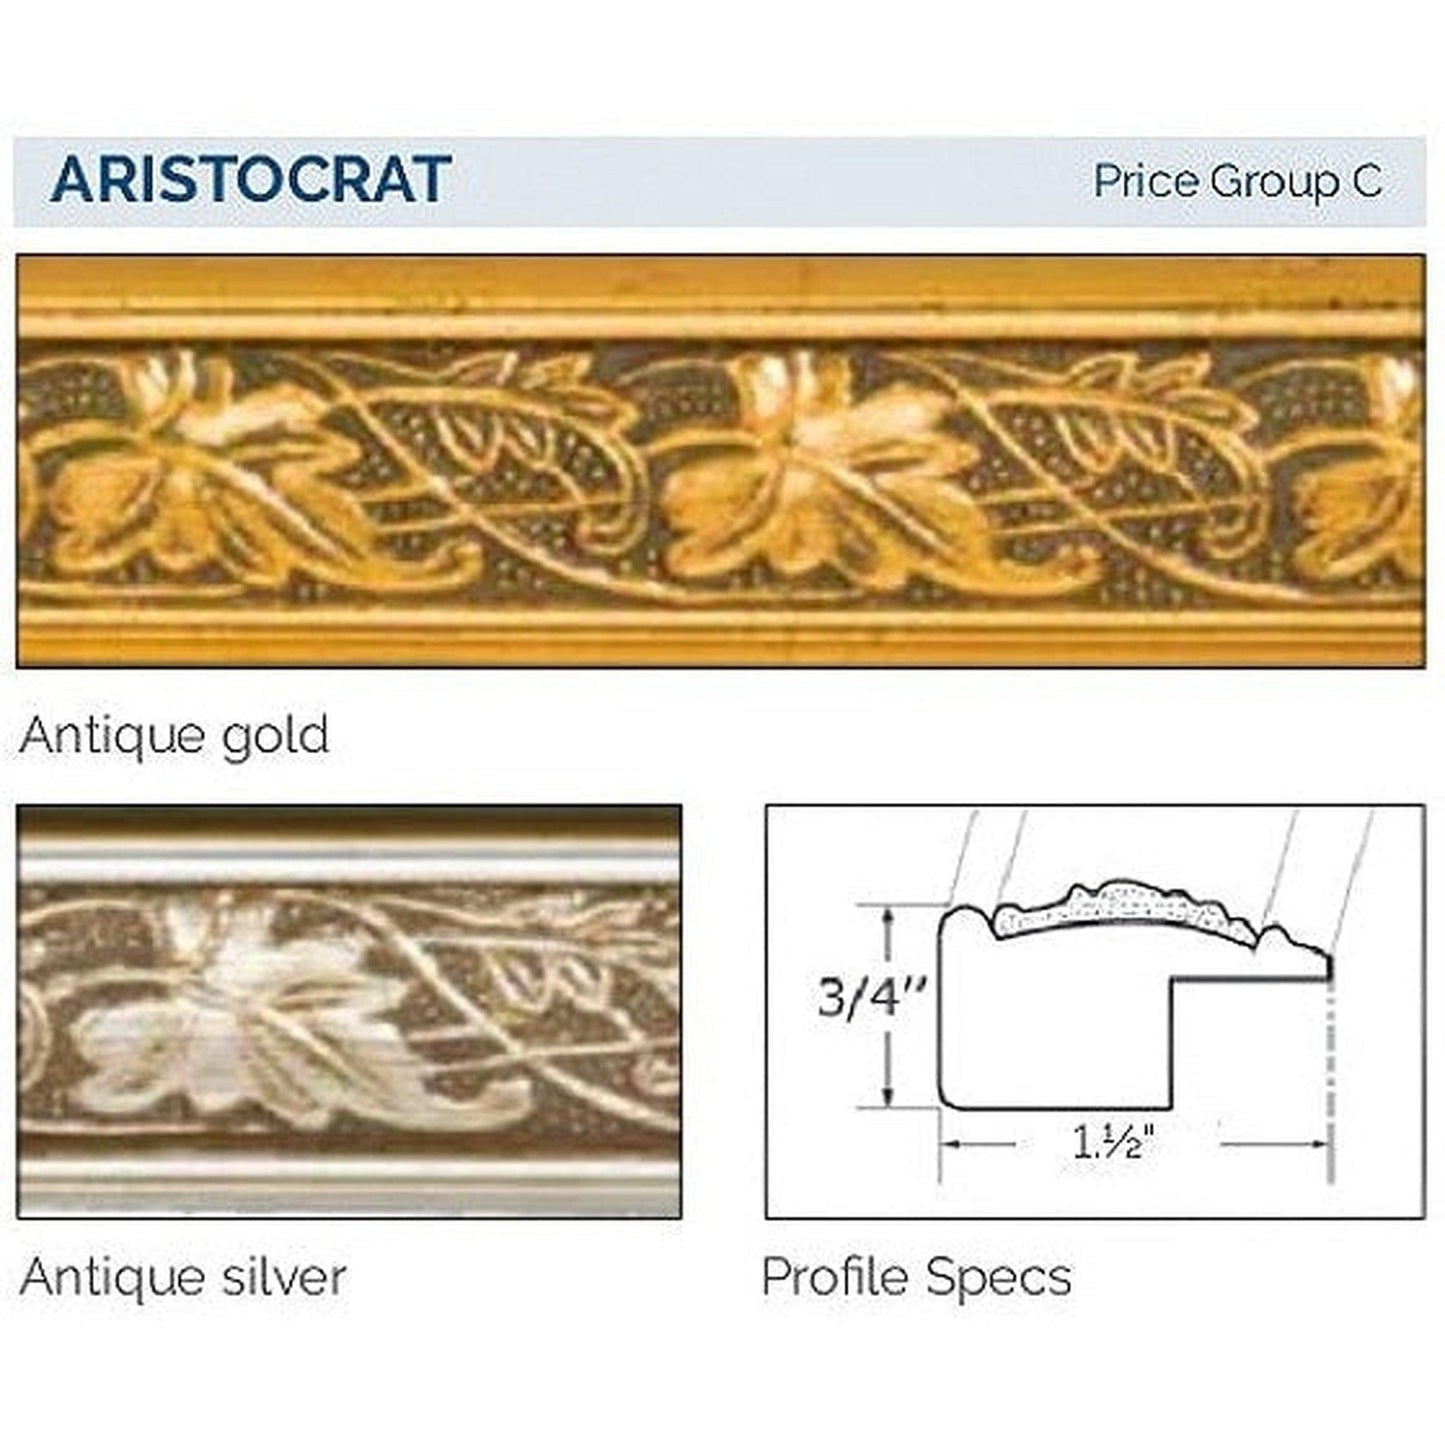 Afina Signature 58" x 30" Aristocrat Antique Silver Recessed Four Door Medicine Cabinet With Beveled Edge Mirror